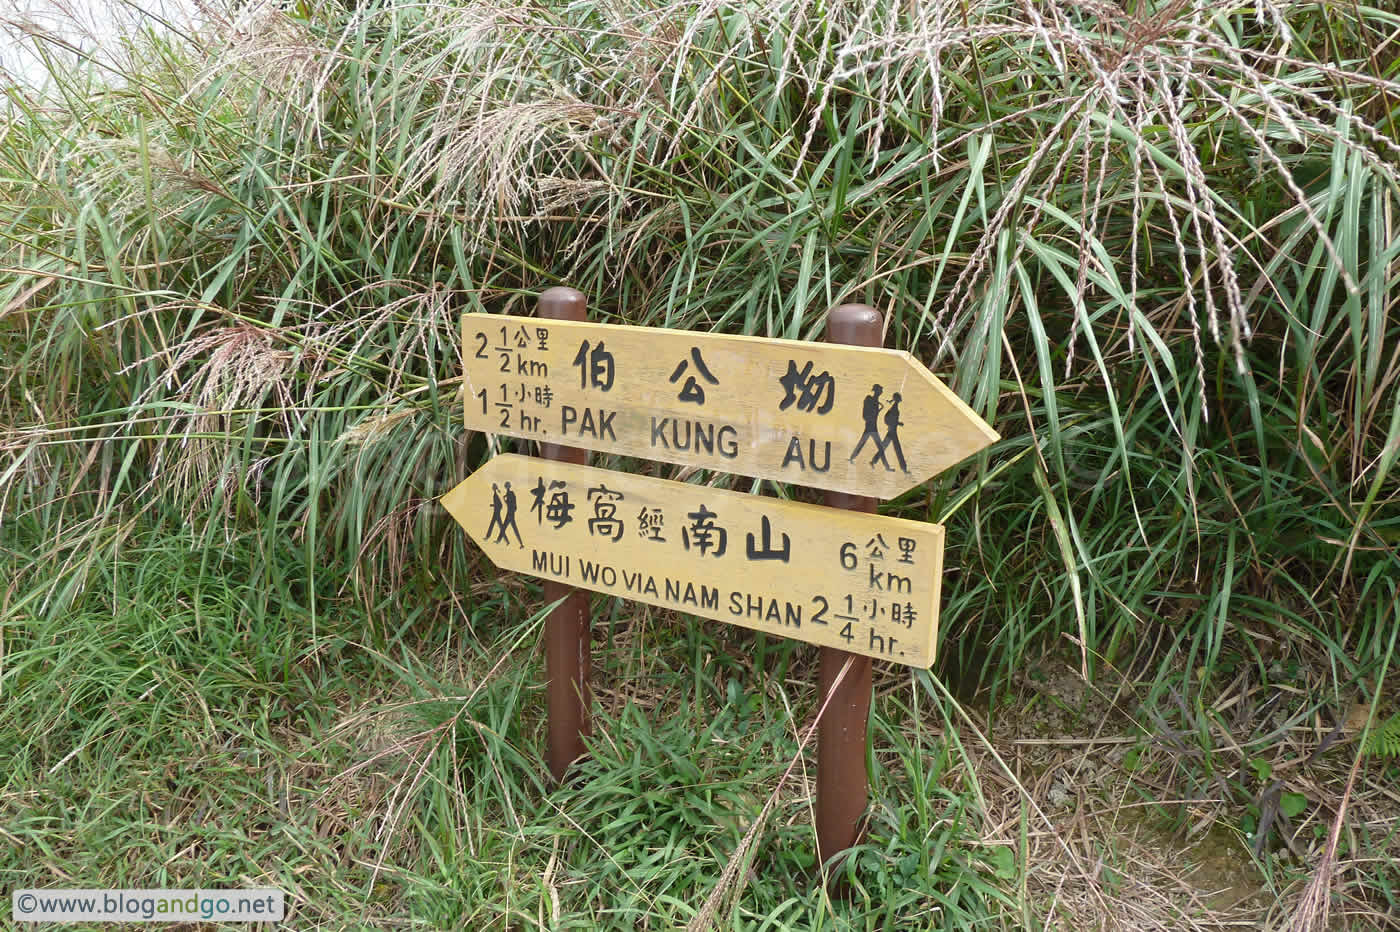 Lantau Trail - Tung Chung Gap next